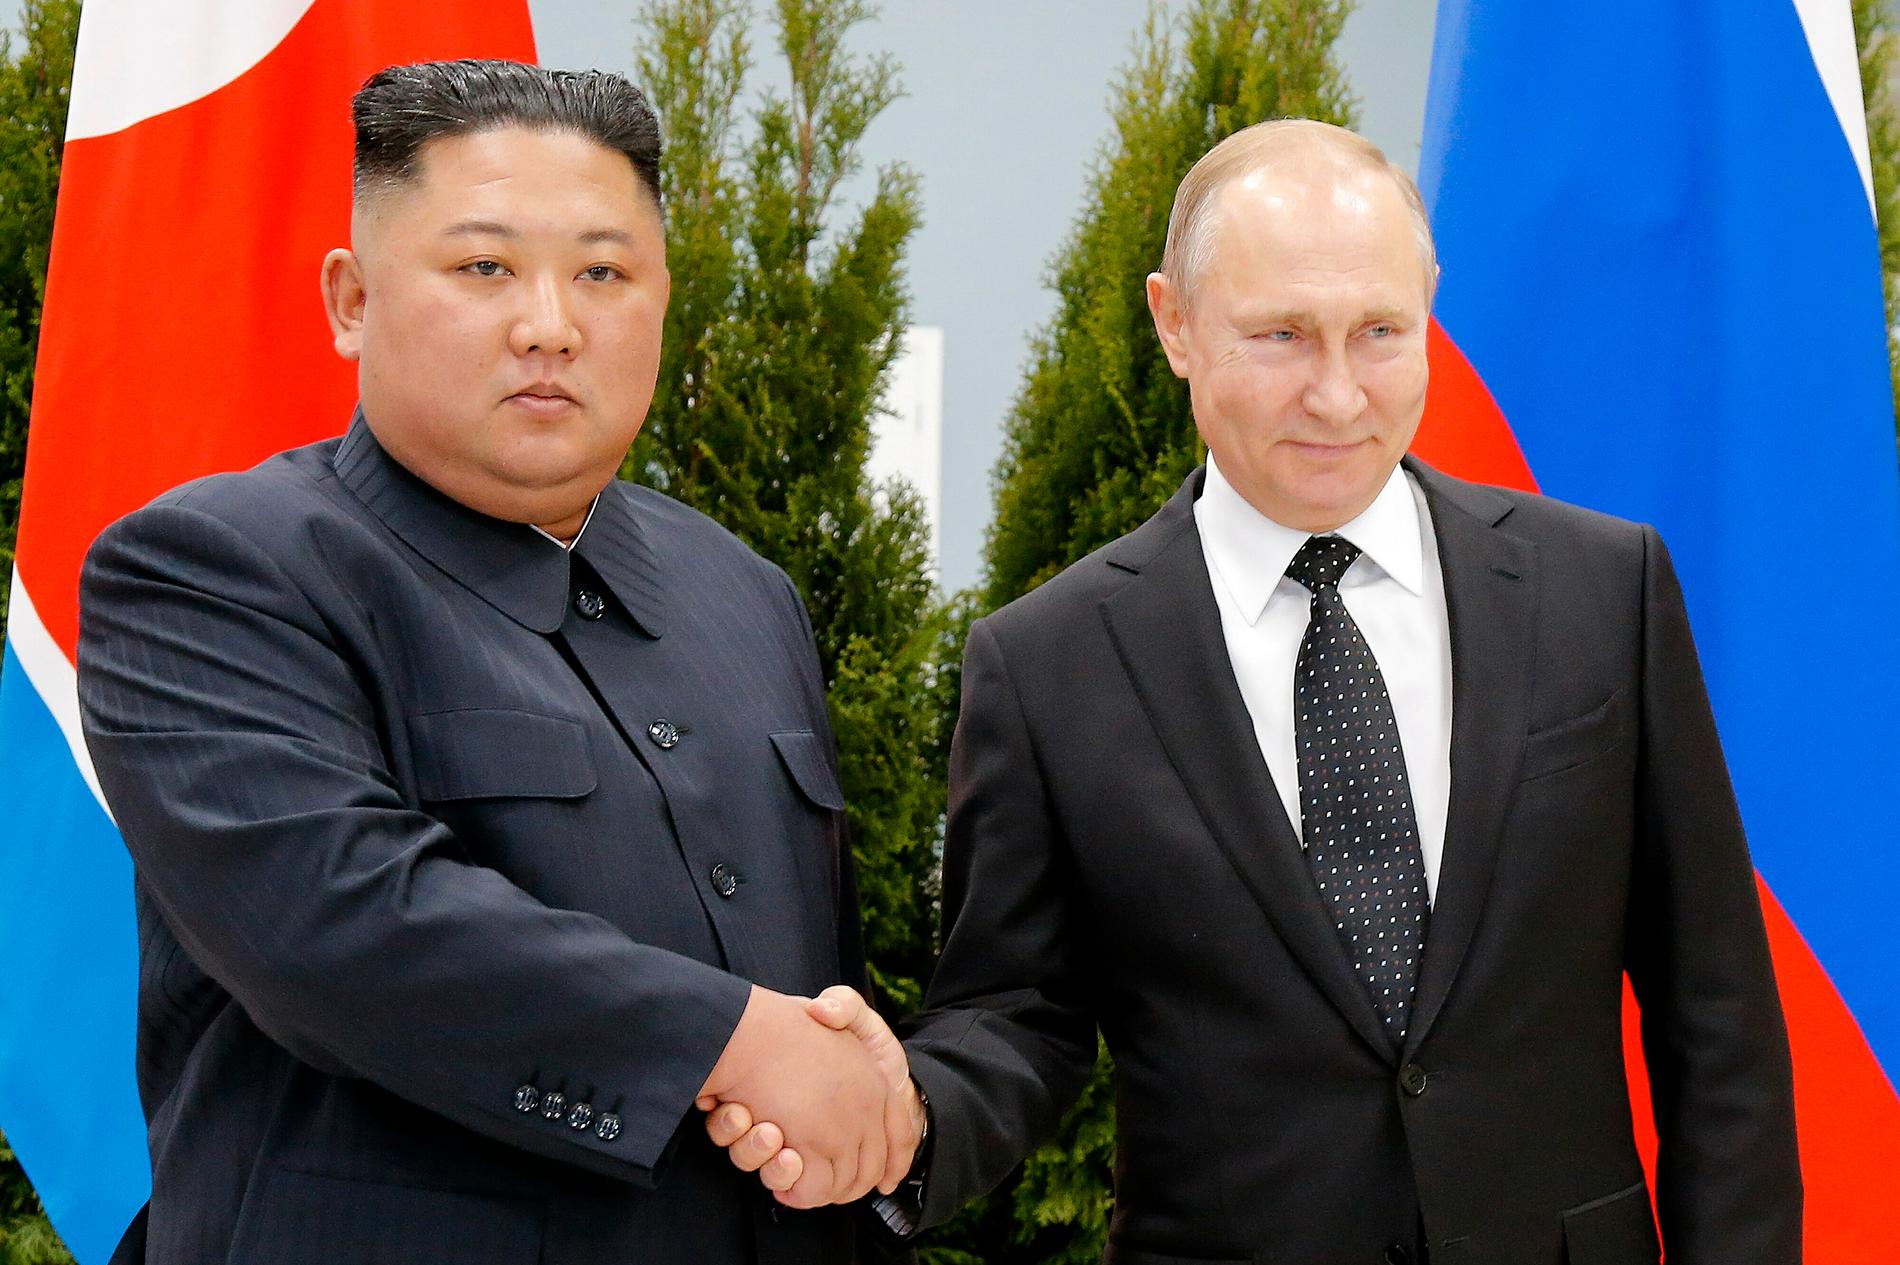 Nordkoreas Kim Jong Un skakar hand med den ryske presidenten Vladimir Putin under ett möte i Vladivostok 2019.